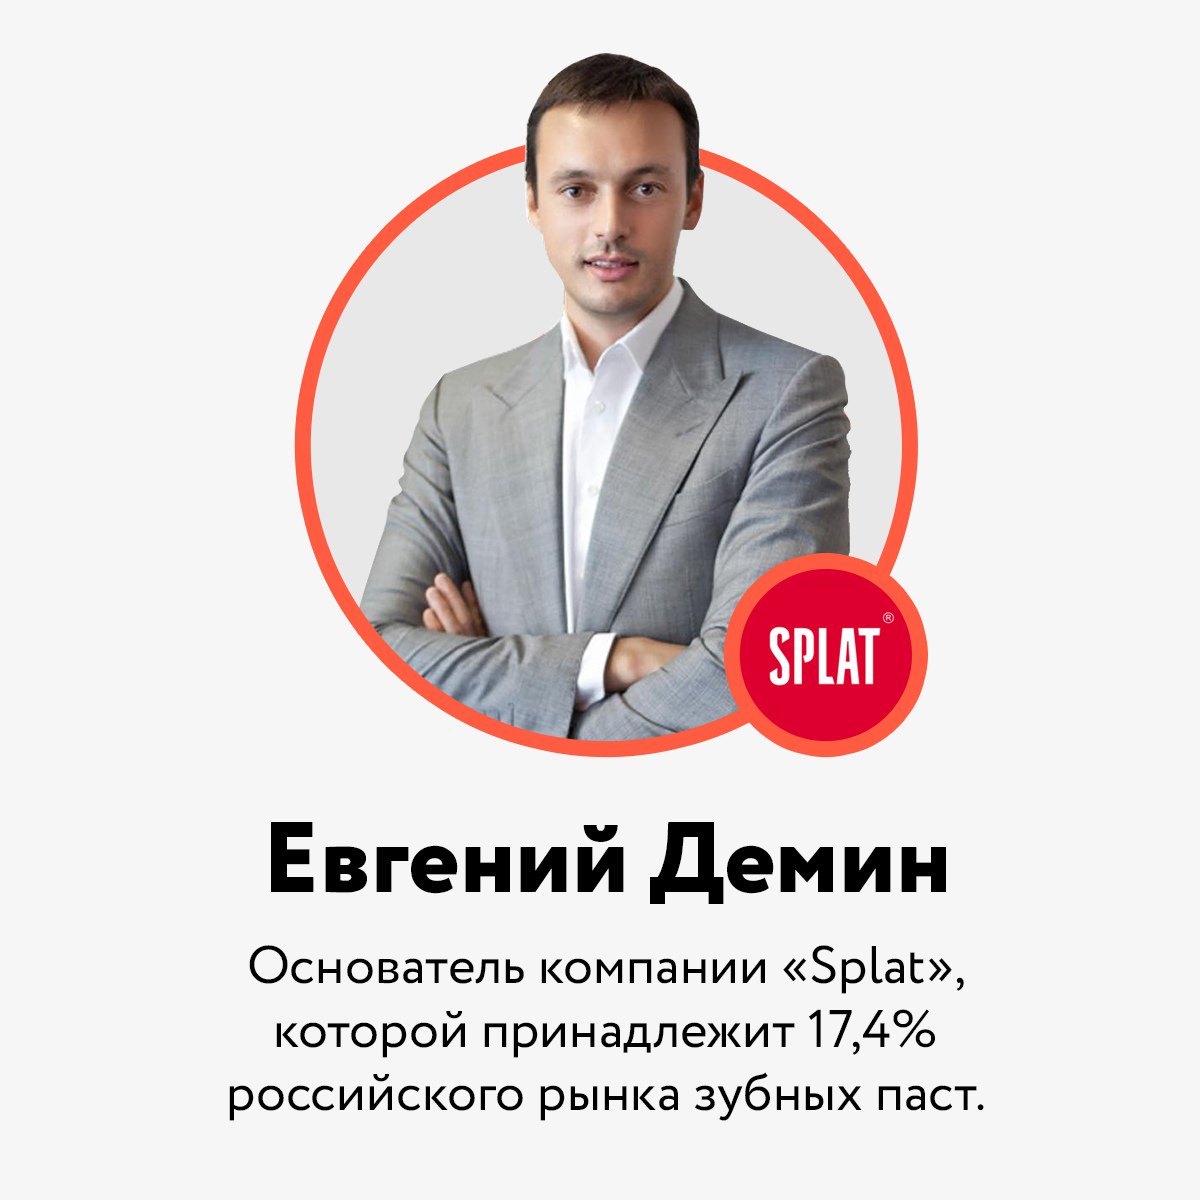 Евгений Демин основатель Splat